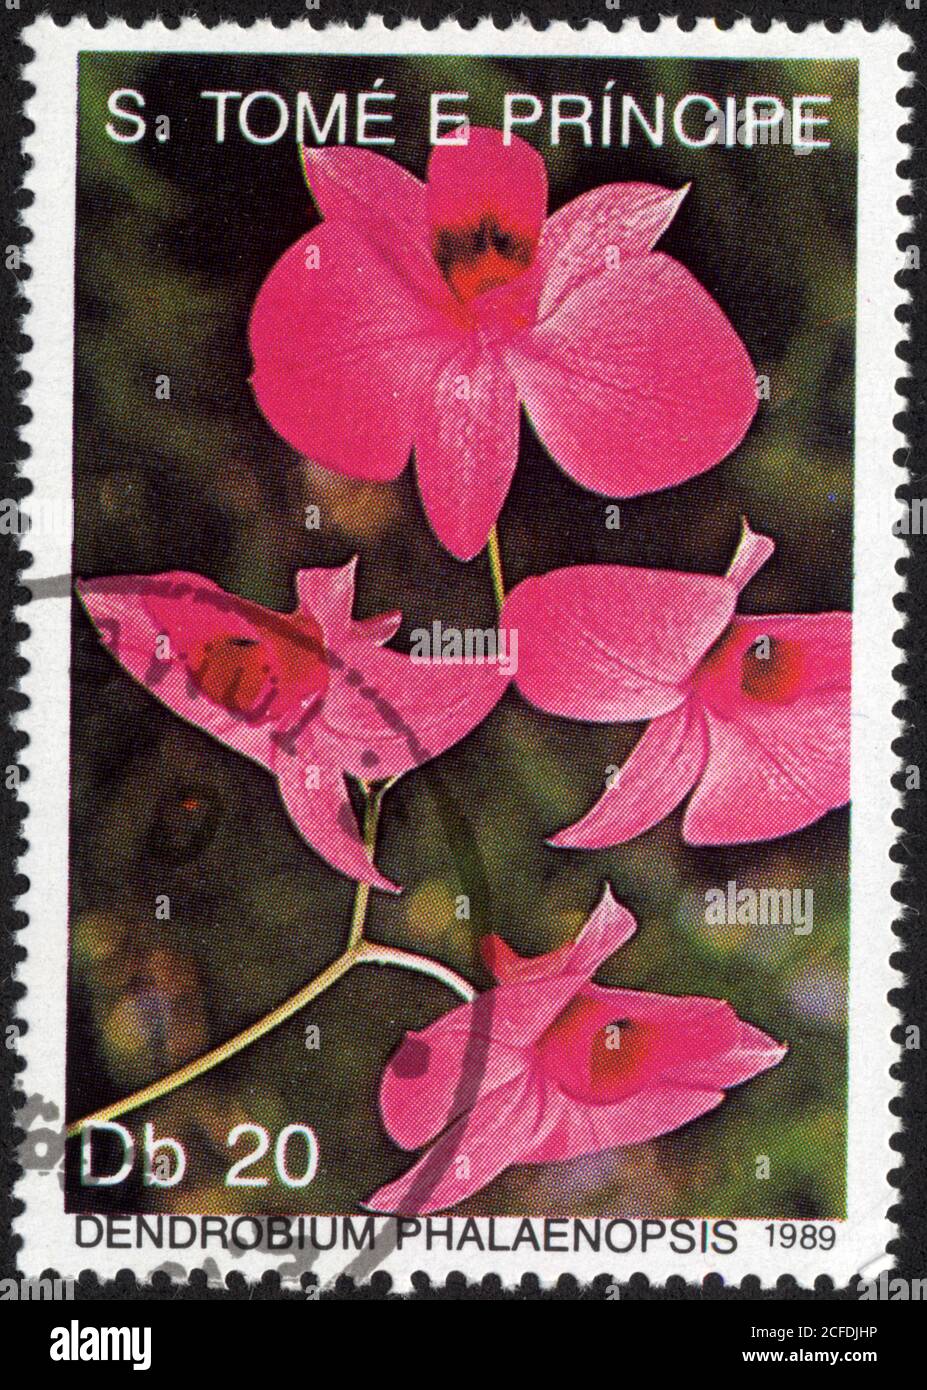 Timbre Dendrobium phalaenopsis. 1989. S.Tomé e Principe Stock Photo